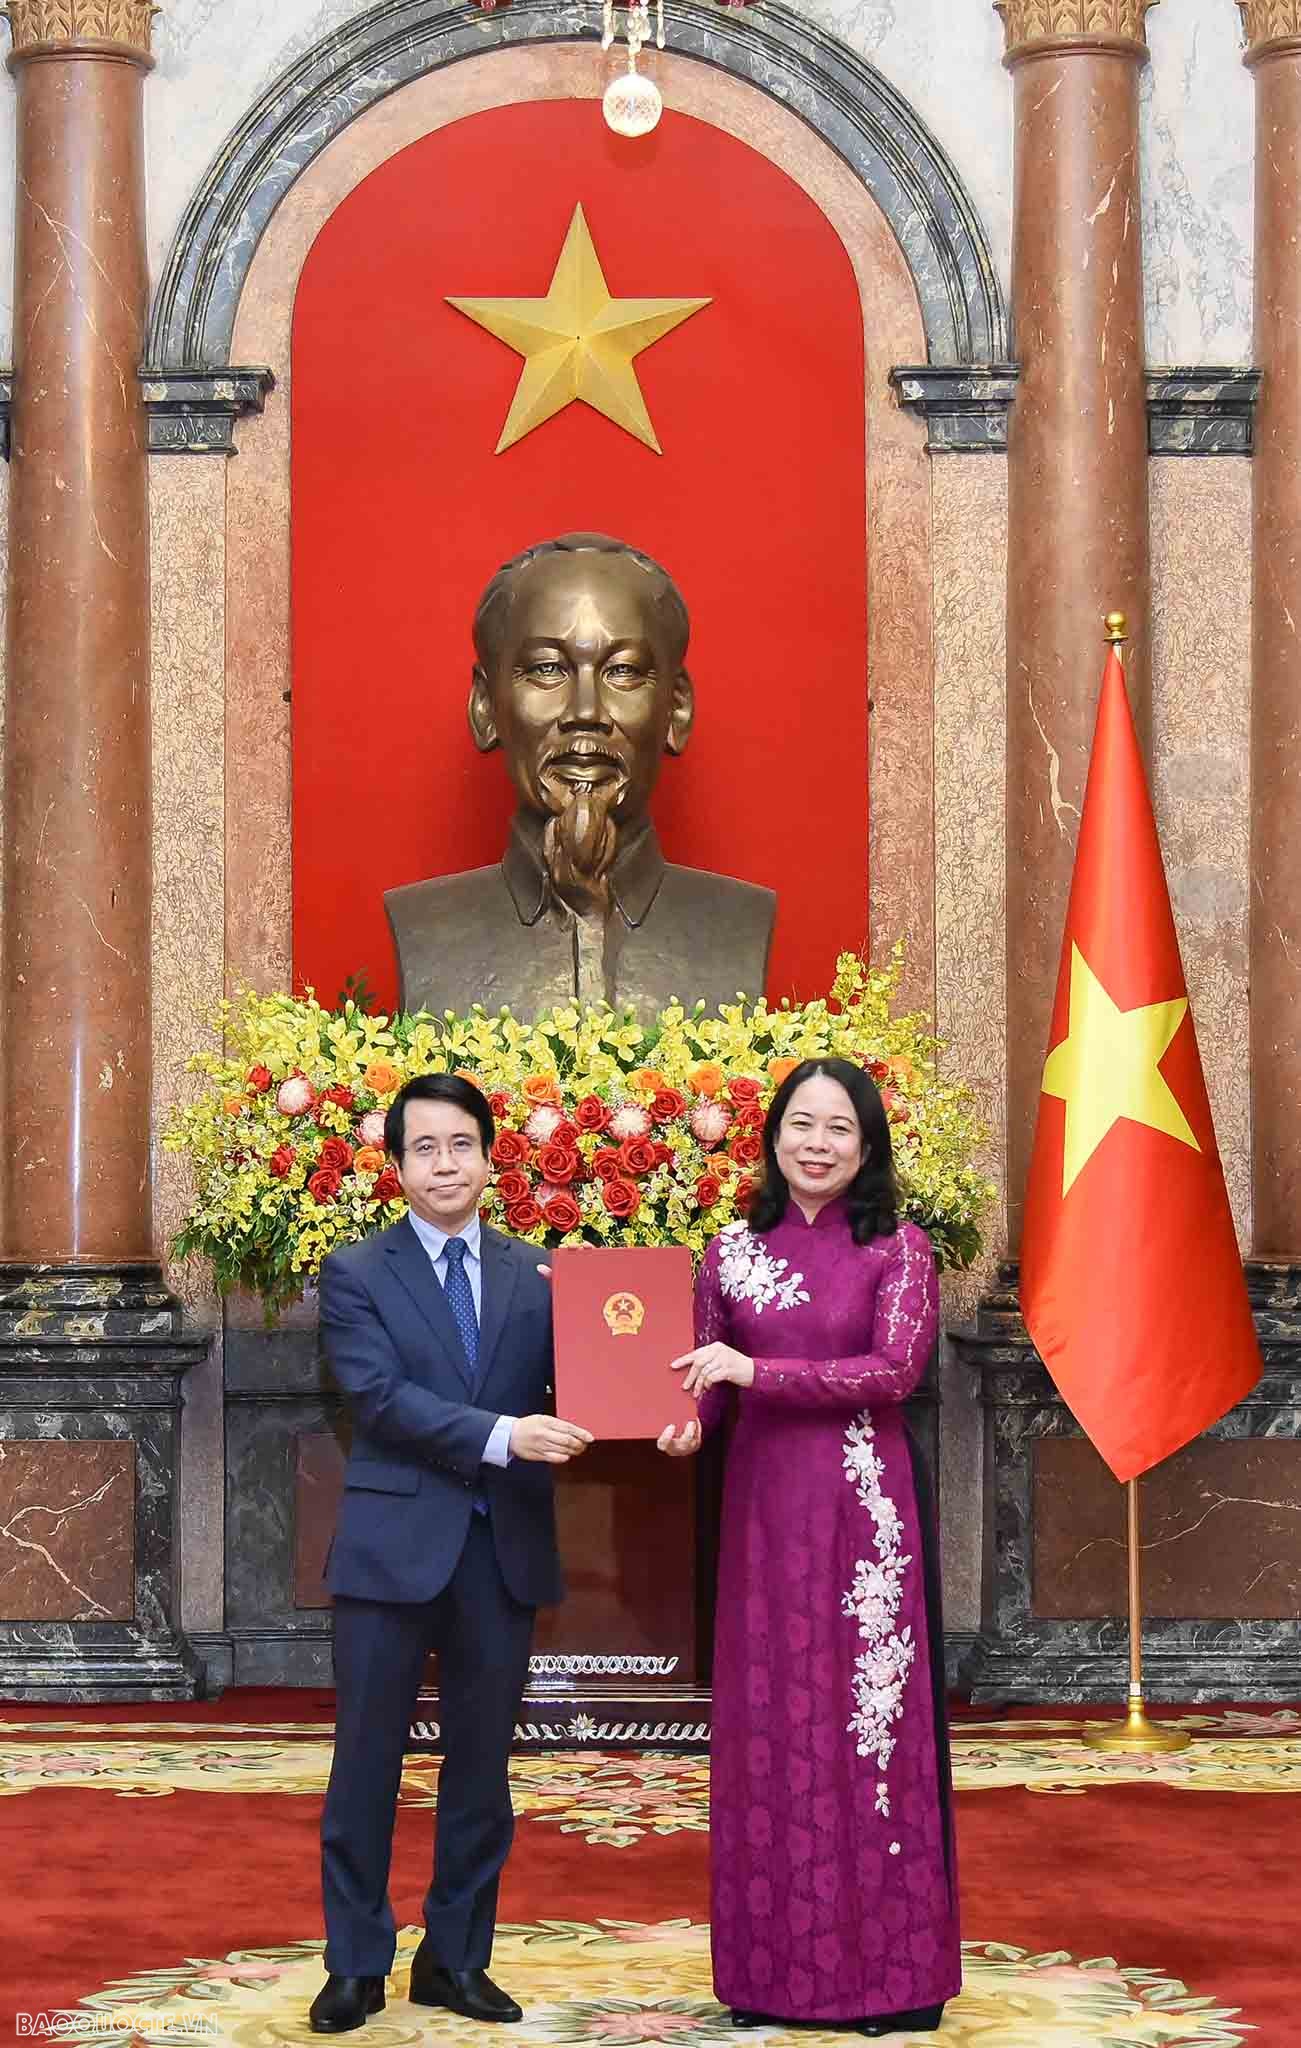 Quyền Chủ tịch nước Võ Thị Ánh Xuân trao Quyết định cho ông Trần Anh Vũ - người được chỉ định làm Đại sứ đặc mệnh toàn quyền nước Cộng hòa xã hội chủ nghĩa Việt Nam tại Brunei Darussalam.